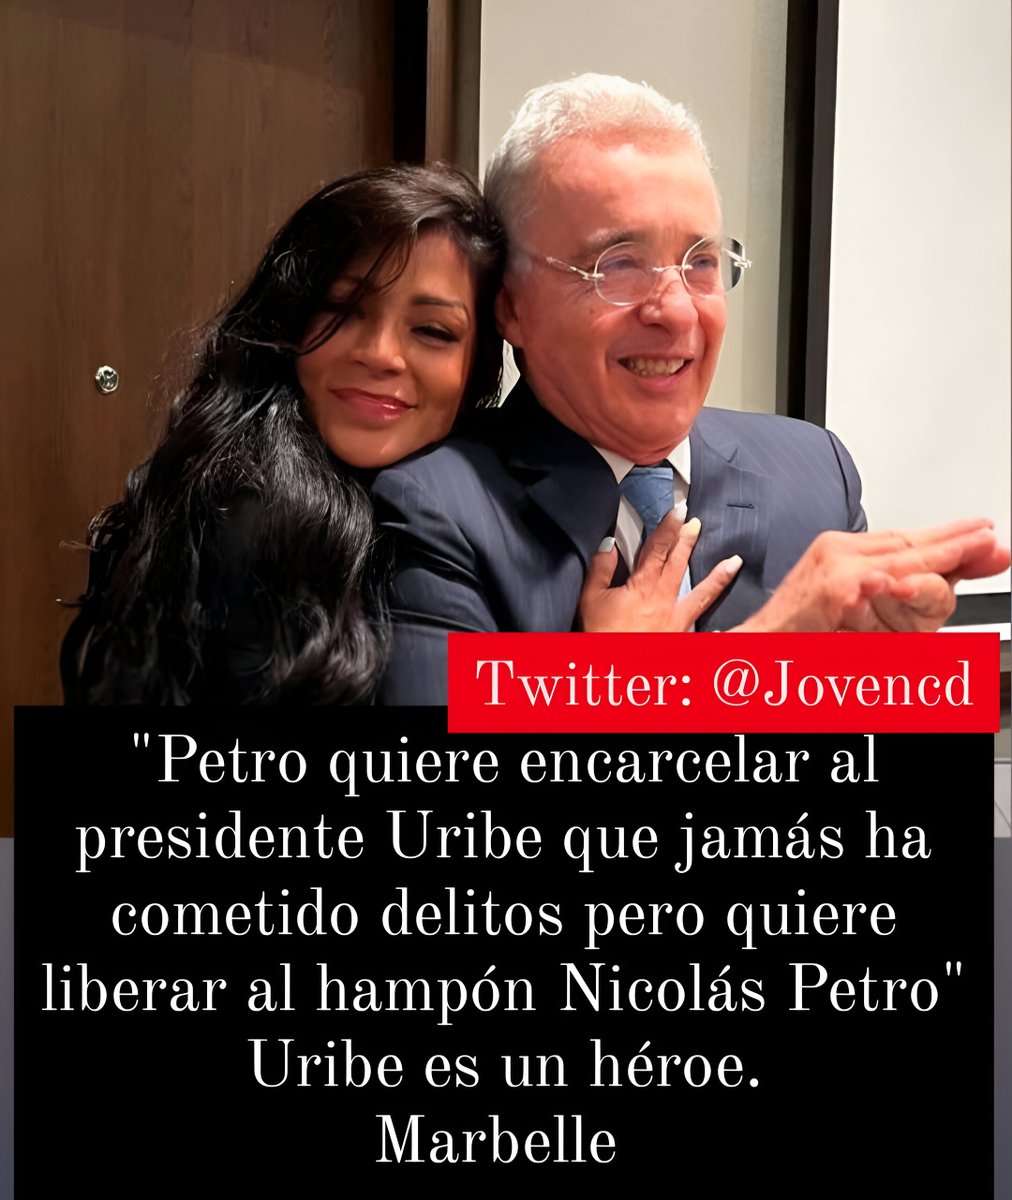 🚨ÚLTIMA HORA🚨 Marbelle es la mejor cantante del país y defiende al presidente Uribe. @Marbelle30 rechaza al dictador Petro. PETRO DICTADOR! URIBE ES INOCENTE! PETRO LE MINTIÓ AL CAUCA! RETWEET 🔁 SI QUIERES PARO NACIONAL CONTRA PETRO #DescontrolEs #Ferxxocalipsis #FueraPetro